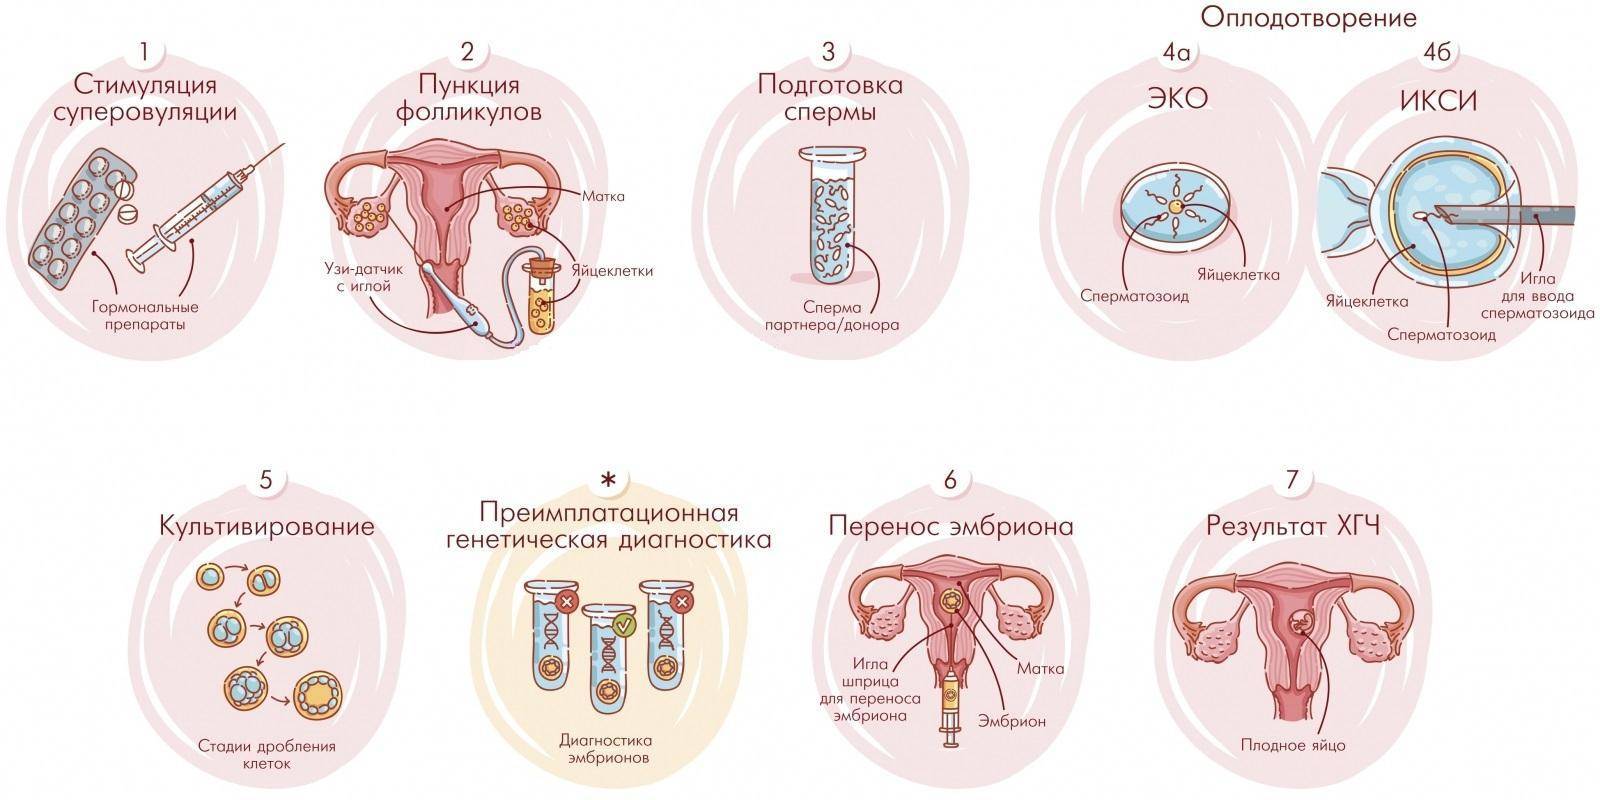 Перенос эмбрионов при эко: подготовка к процедуре, как происходит подсадка эмбриона в матку | статьи от центра репродуктивного здоровья «см-клиника»